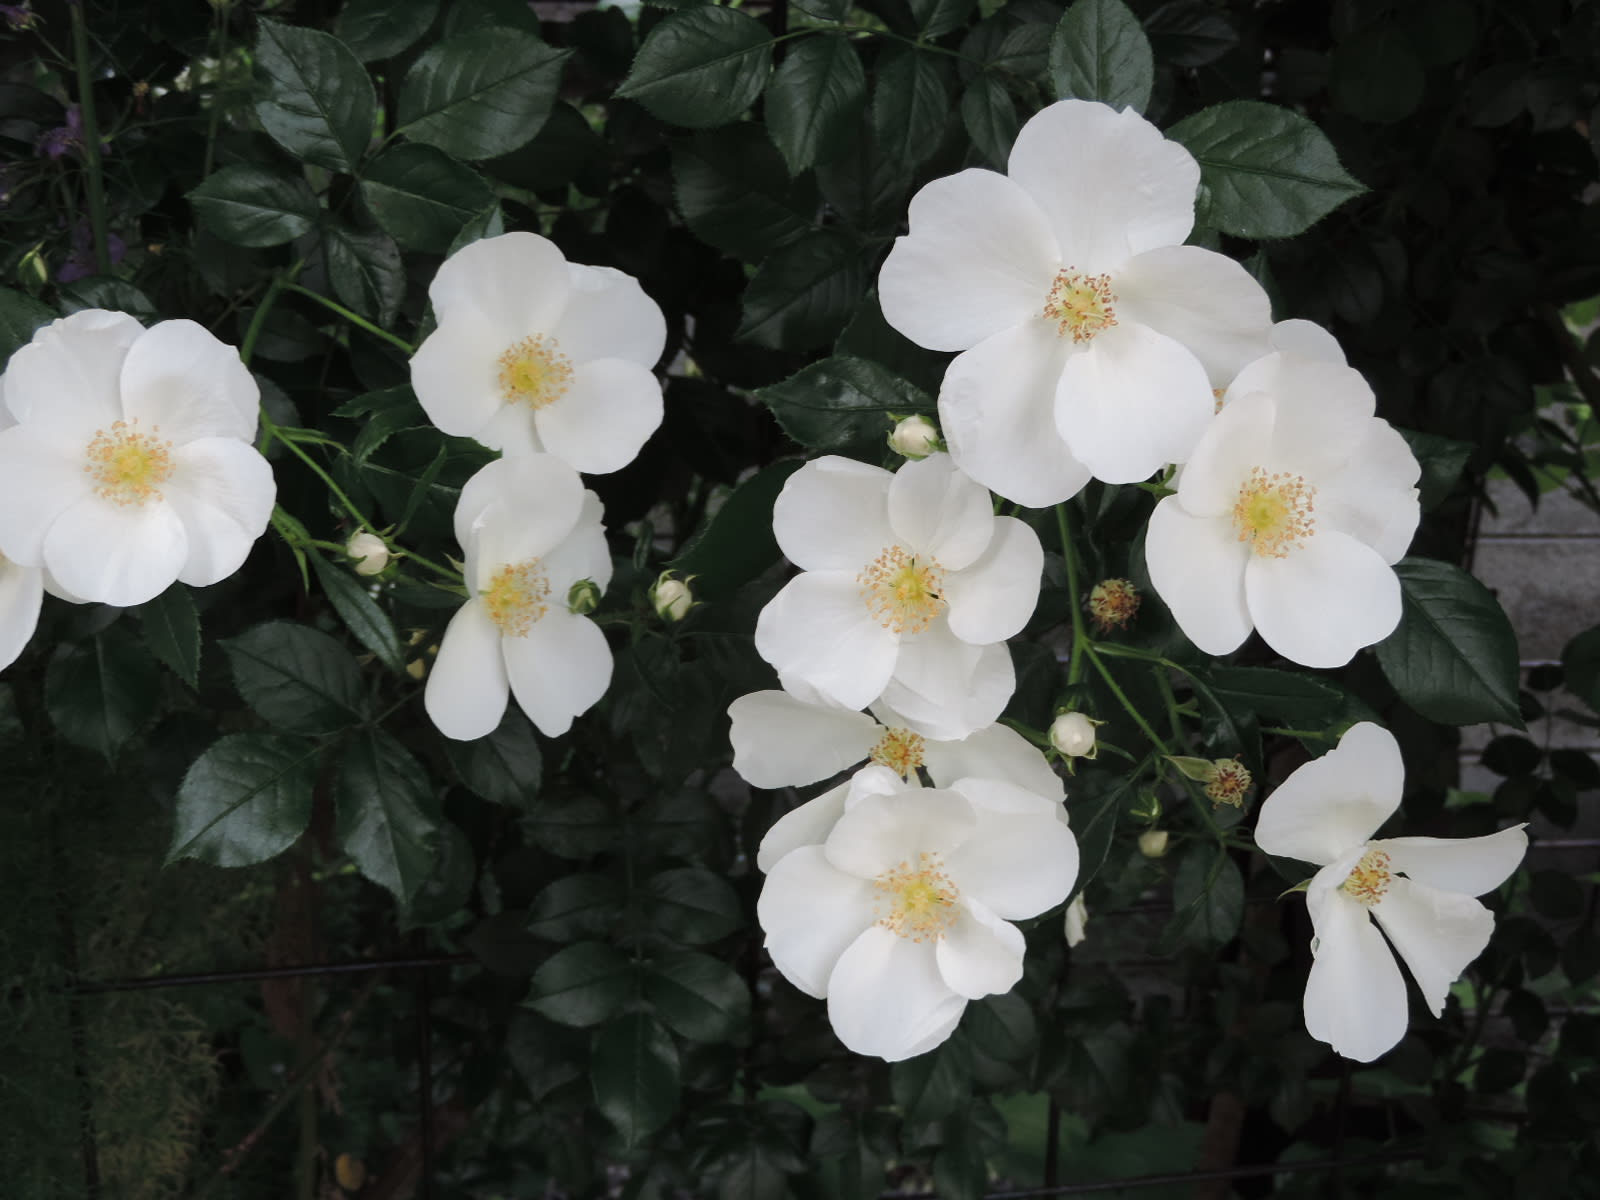 東側通路の白いバラ つるアイスバーグ サリーホルムズ フラウホレ 四季彩ガーデンにようこそ